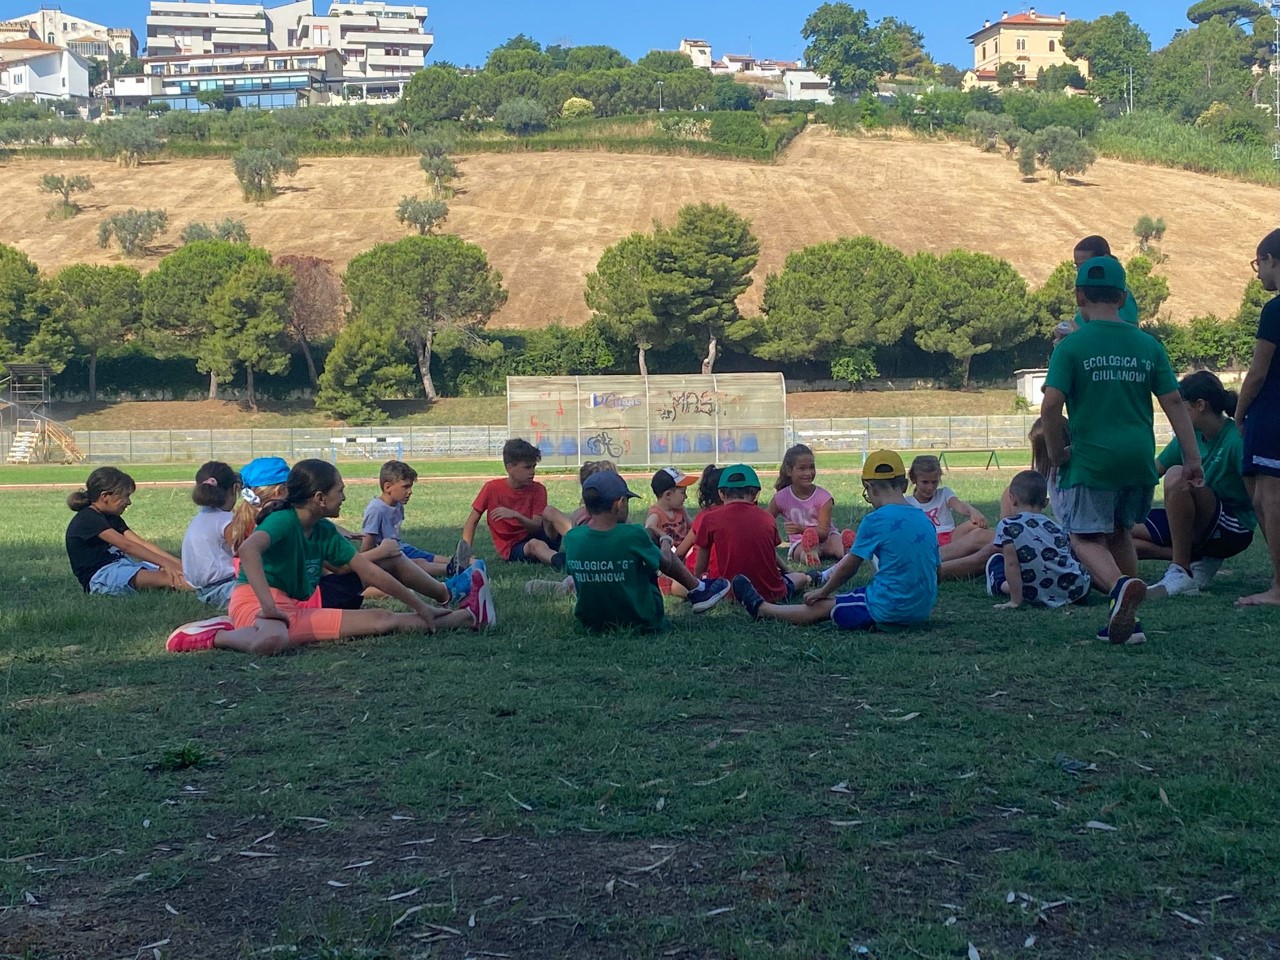 Sole, sport, sorrisi: il Camp dell'Ecologica G anima l'estate di Giulianova